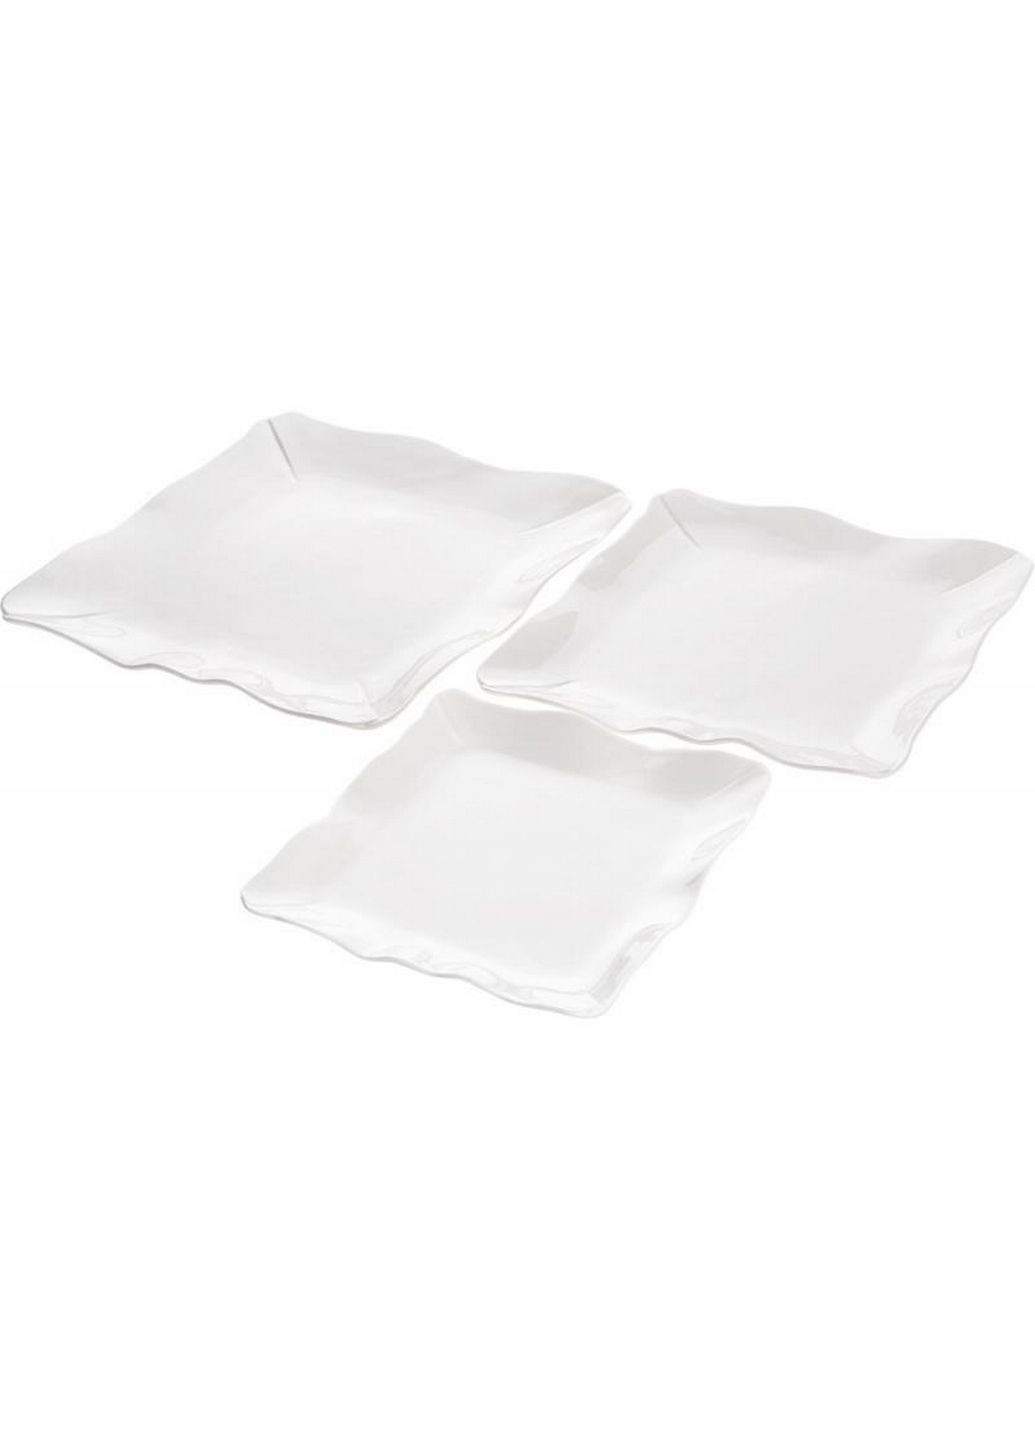 Тарелки квадратные white city волн, набор 4 фарфоровые тарелки Bona (282585940)